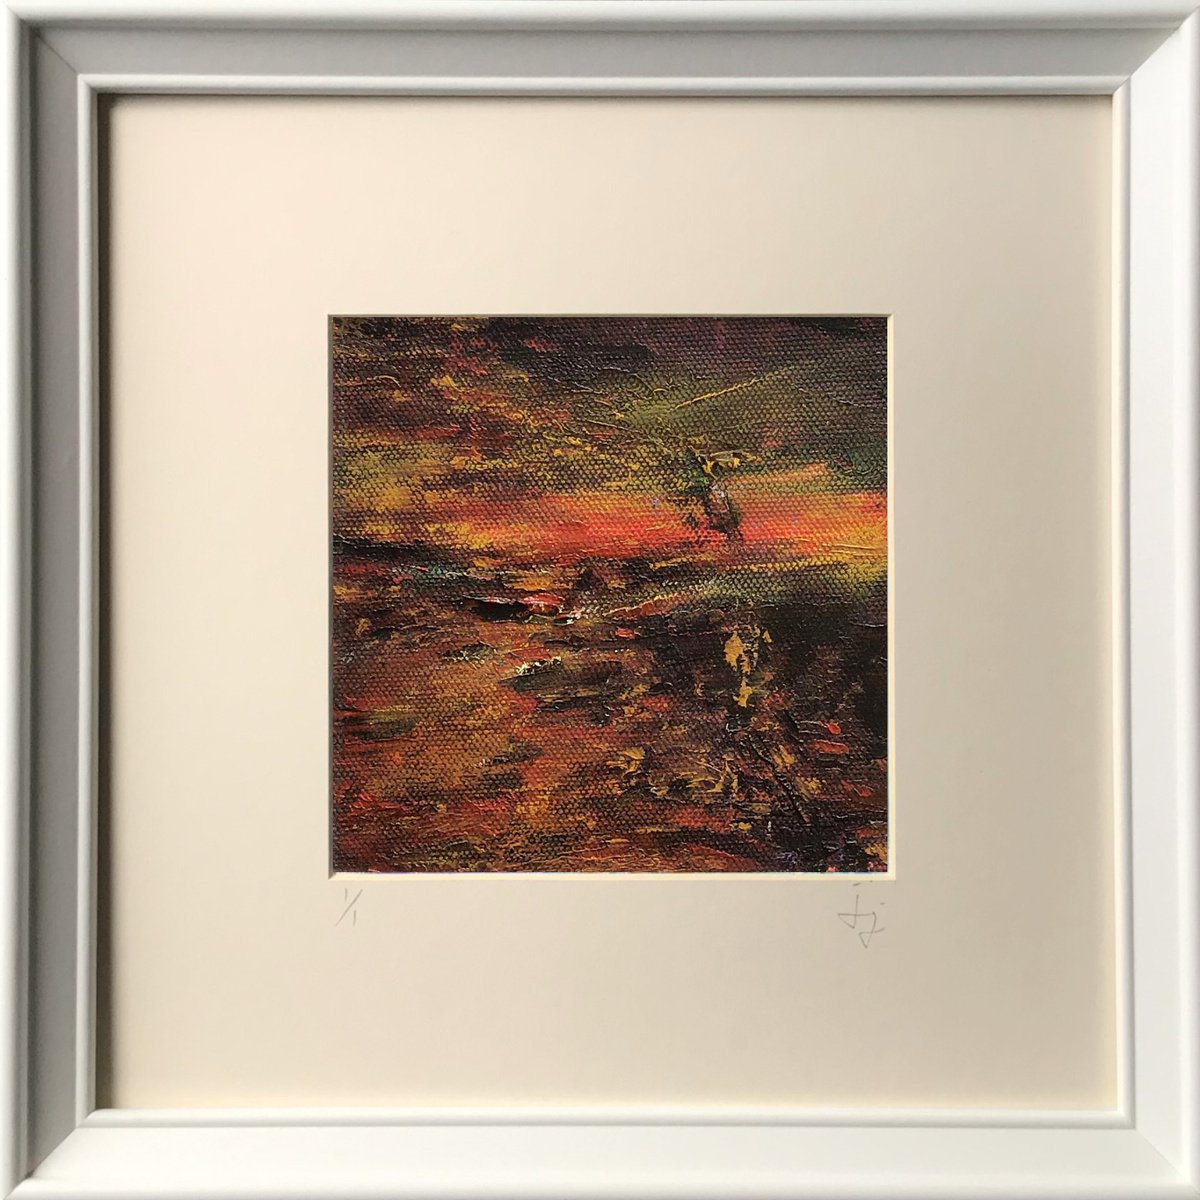 Fragment 8 - Dynamic, framed oil painting by Jon Joseph